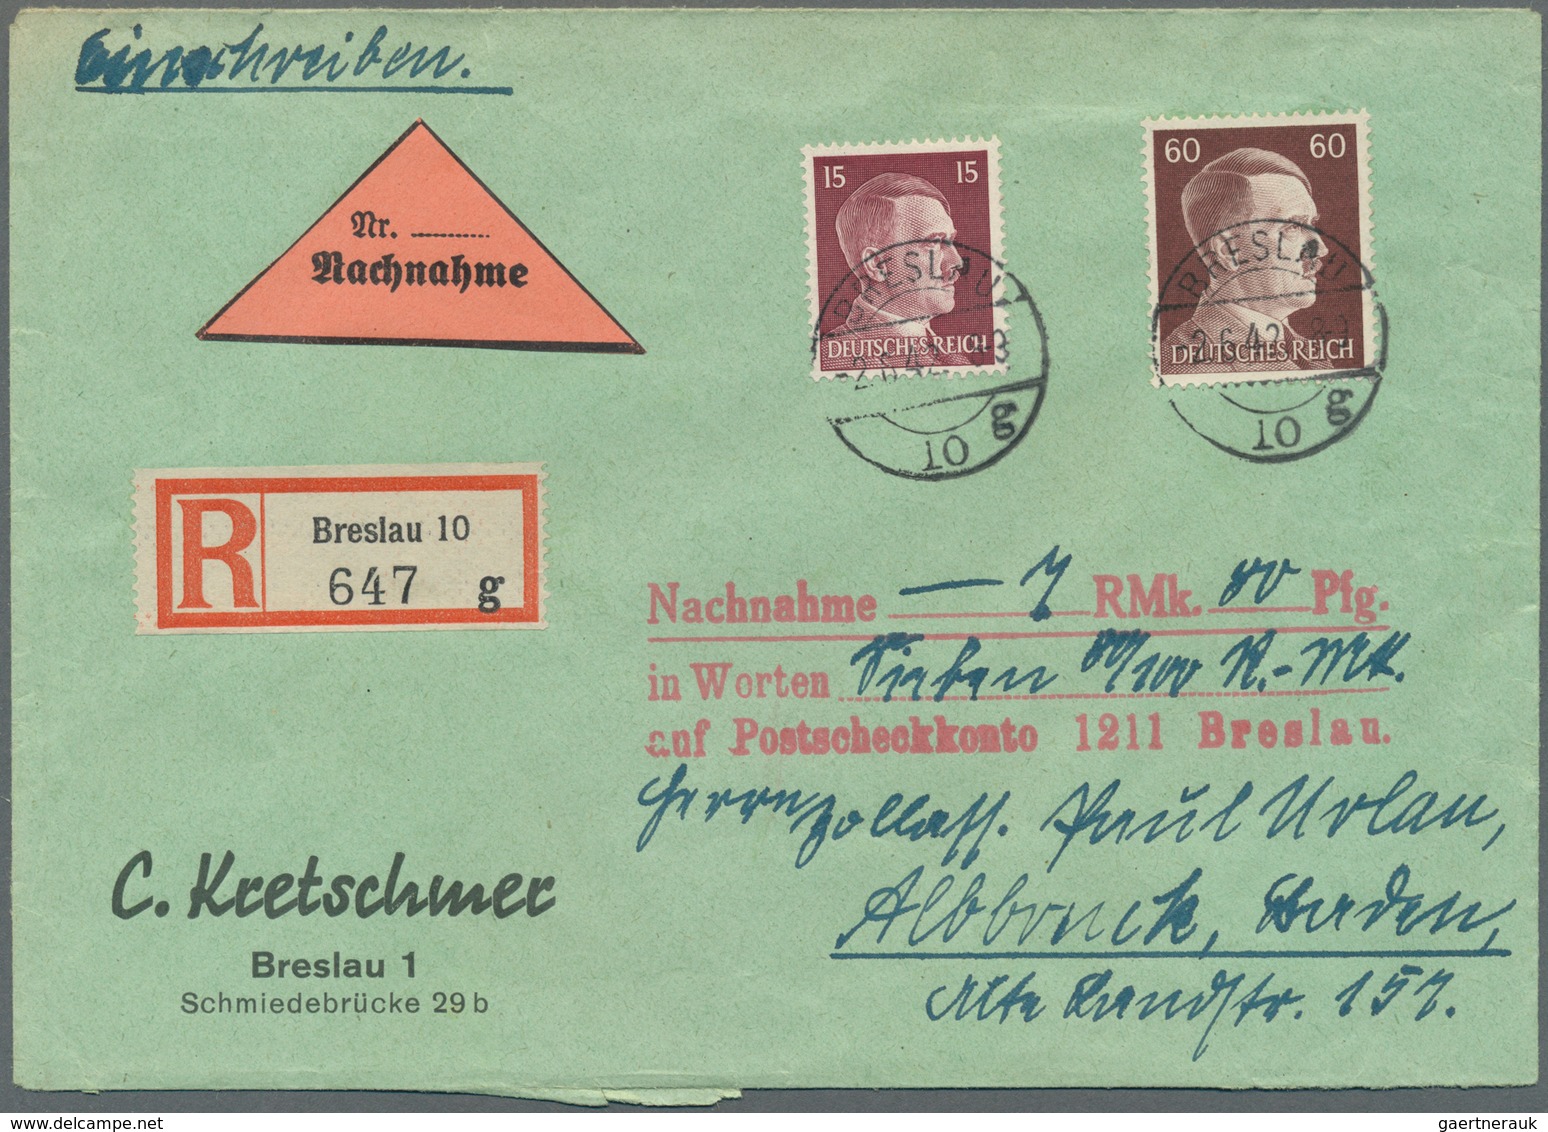 Deutschland: 1941/1973, vielseitige Partie von ca. 290 Briefen und Karten, unberührt aus Sammler-Kor